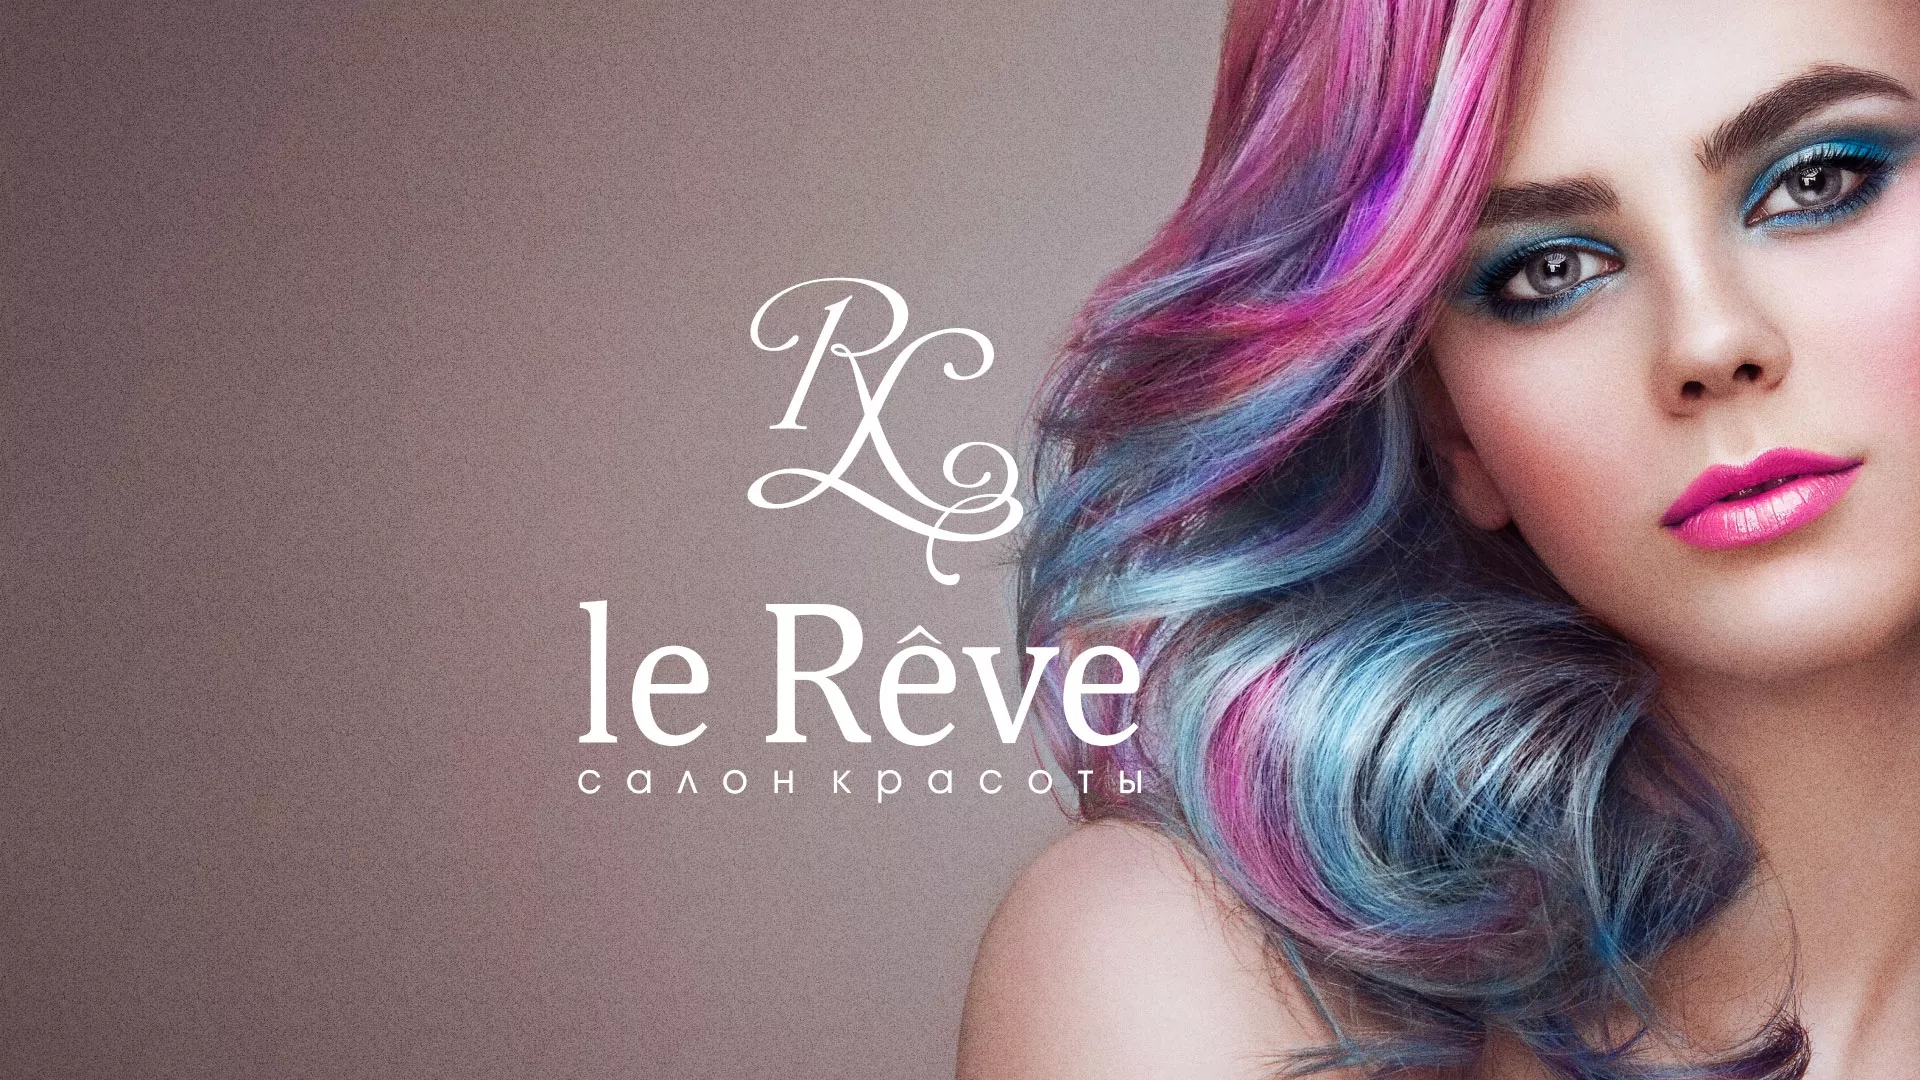 Создание сайта для салона красоты «Le Reve» в Усть-Катаве